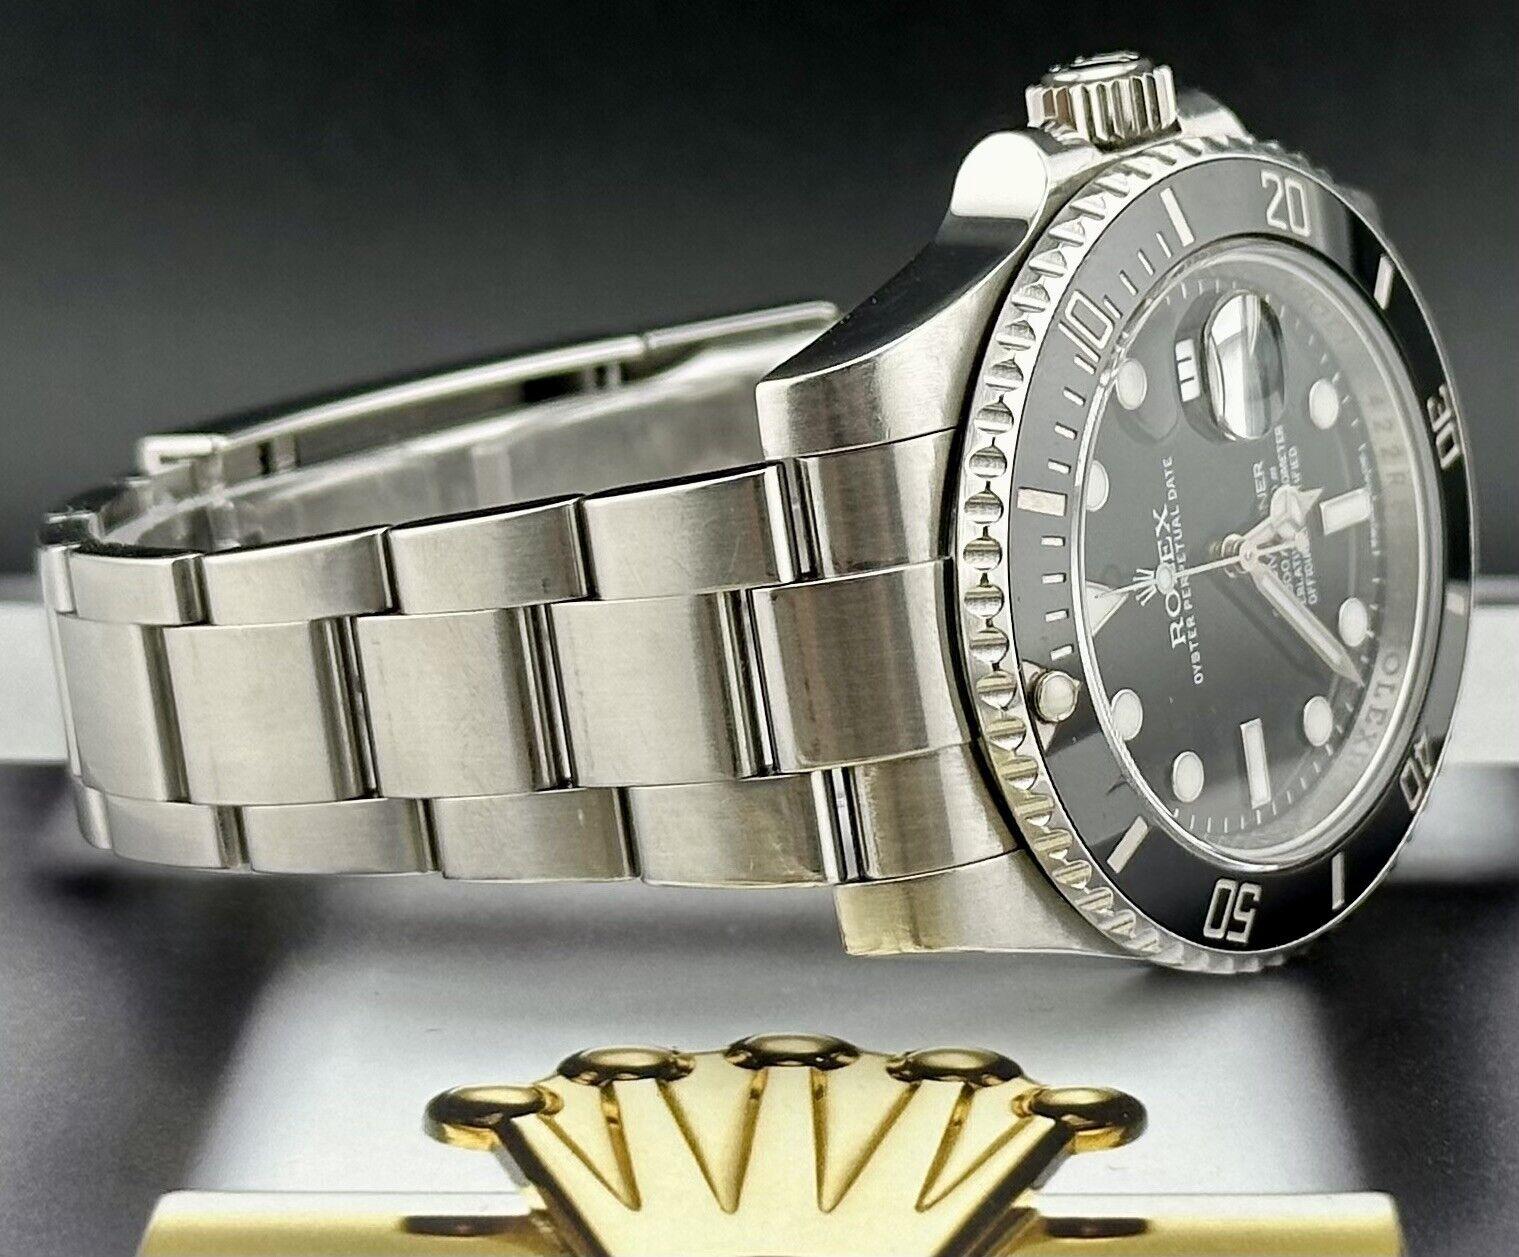 Reloj Rolex Submariner Date 40mm. Un reloj de segunda mano con caja original y tarjeta 2013. El reloj es 100% auténtico y viene con tarjeta de autenticidad. La referencia del reloj es 116610LN y está en excelentes condiciones (ver fotos). El color